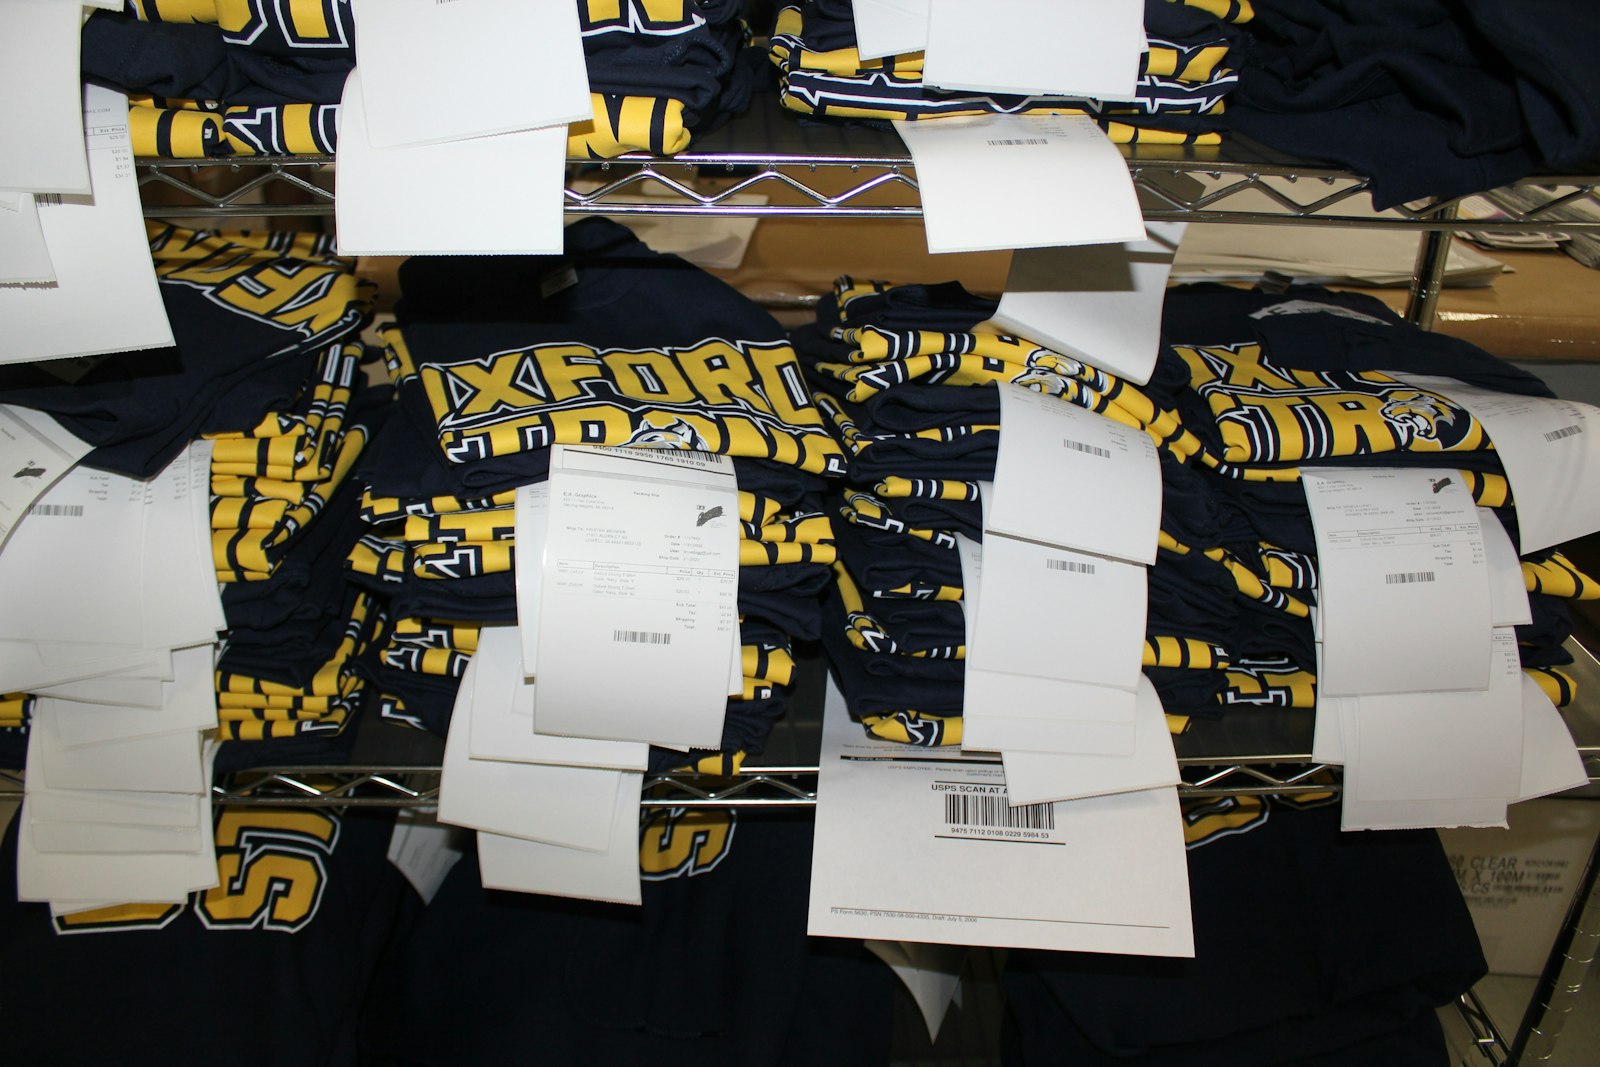 El suministro de camisetas en la planta de E.A. Graphics se entregará pronto a quienes apoyen la causa de Oxford Strong. La empresa ha recibido pedidos de todo Michigan, e incluso más allá. (Foto de Wright Wilson | Especial para Detroit Catholic)